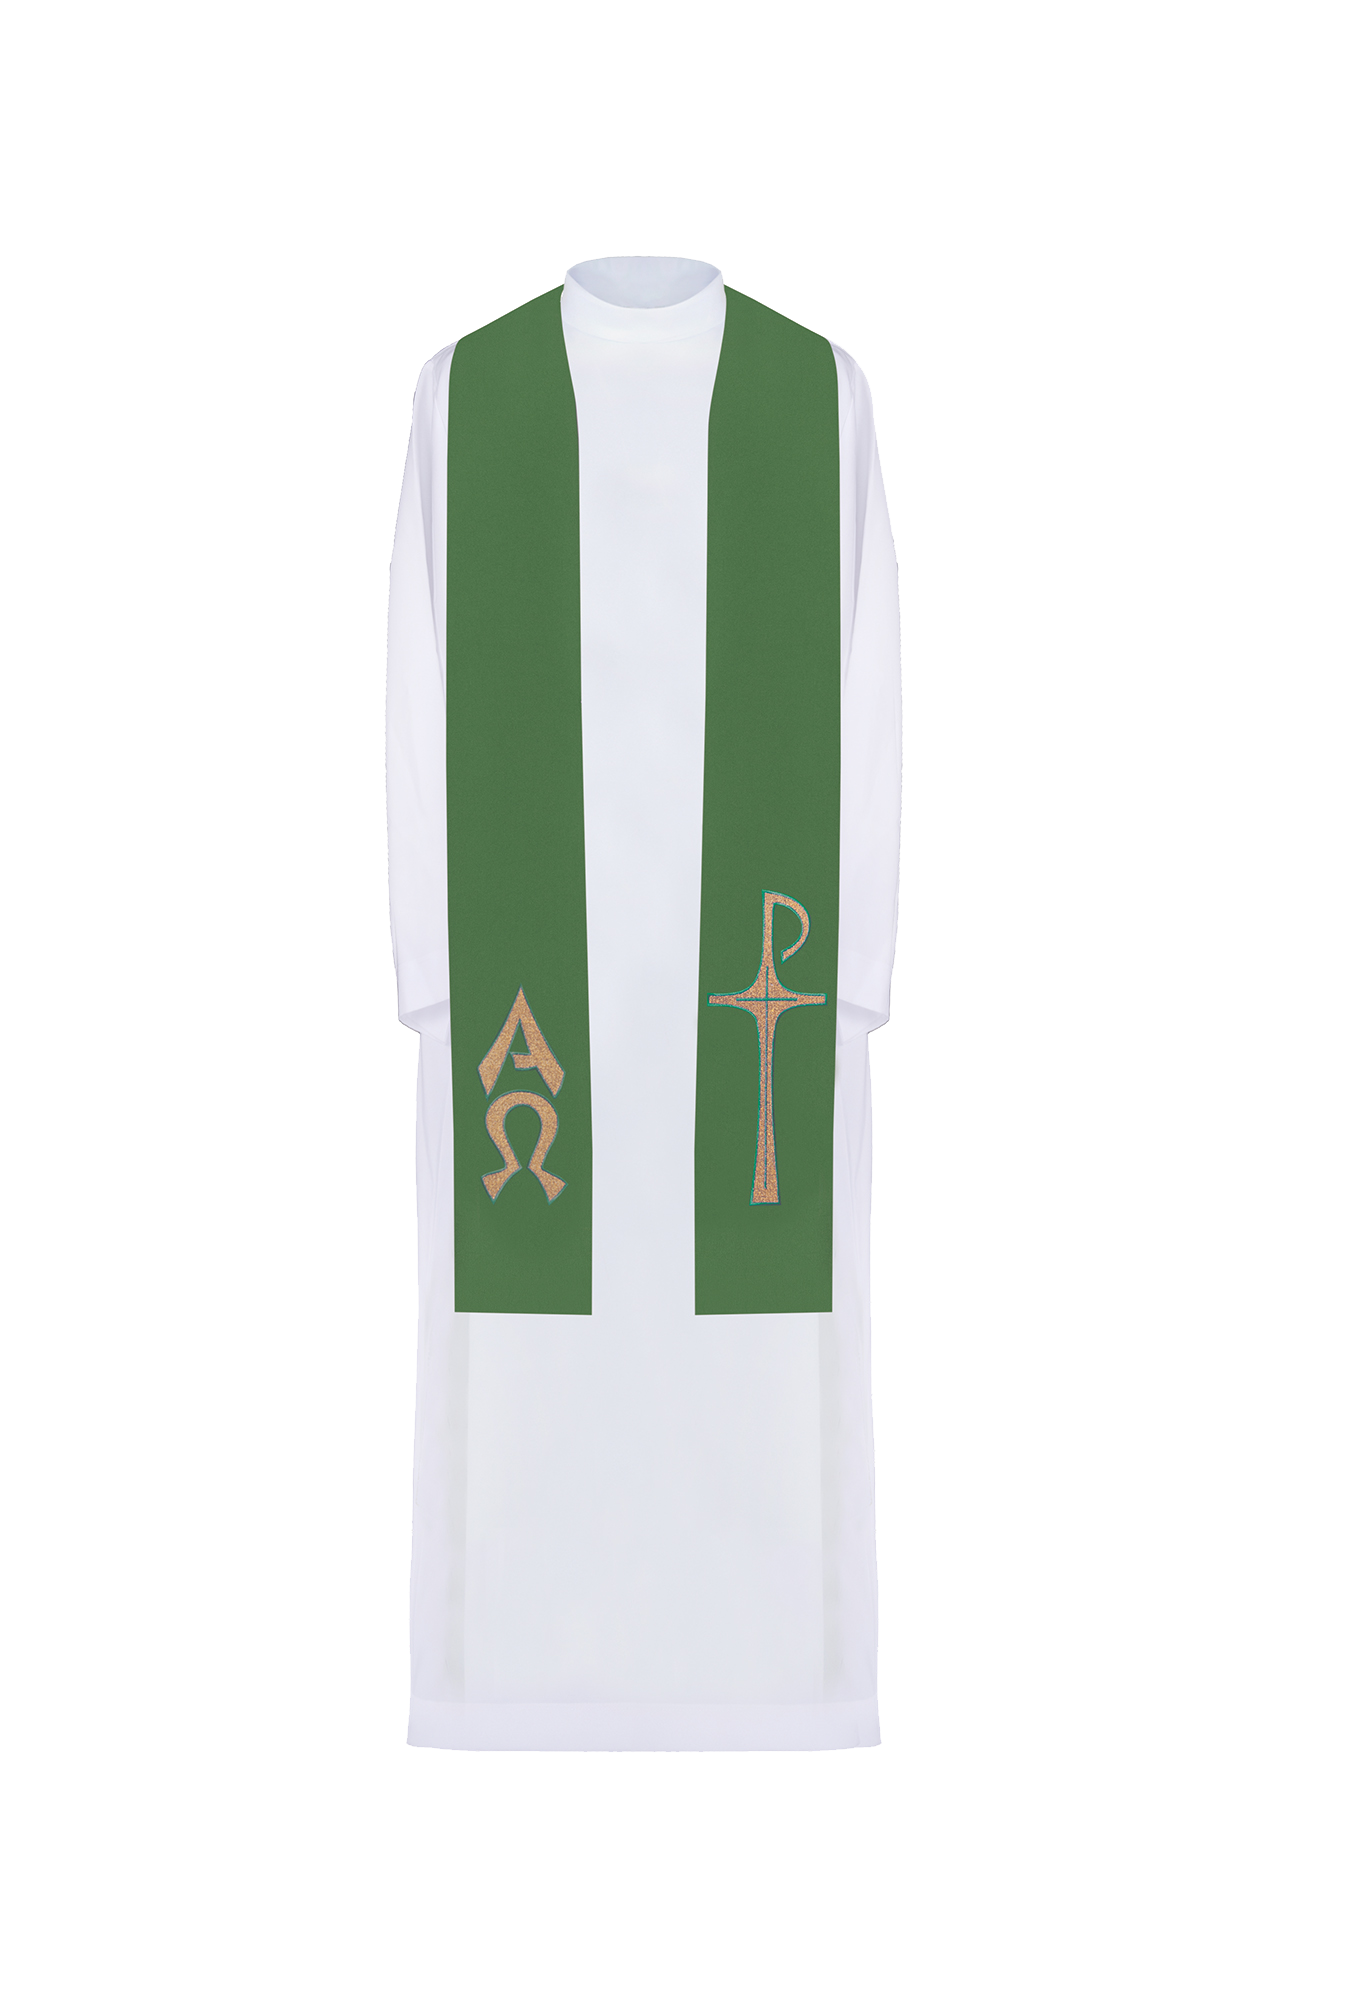 Stuła kapłańska haftowana z motywem Alfa i Omega w kolorze zielonym